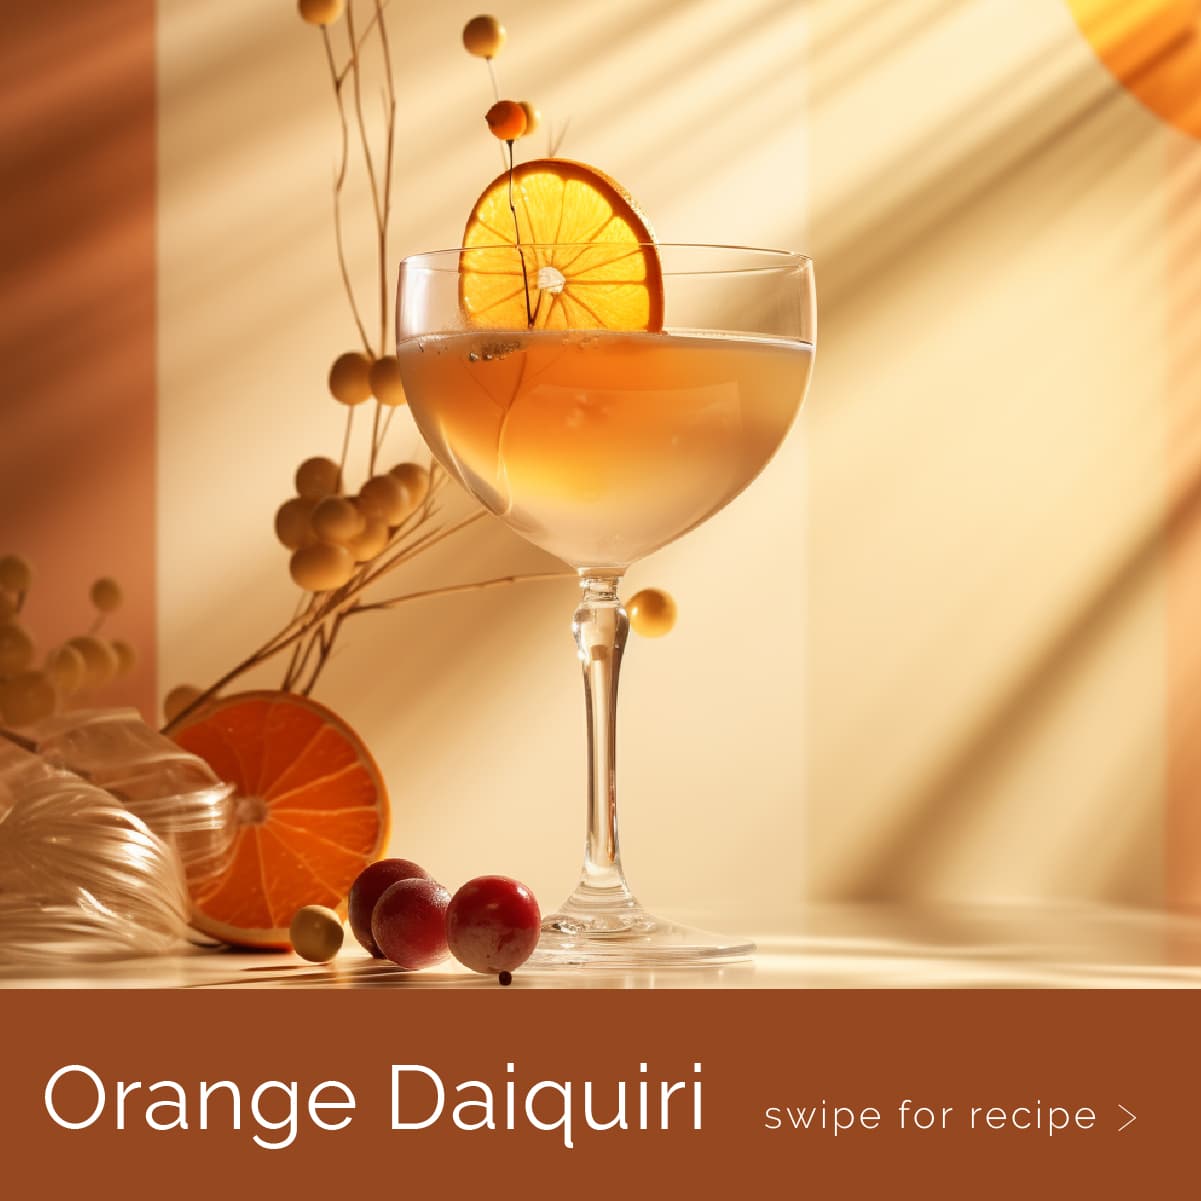 An Orange Daiquiri cocktail